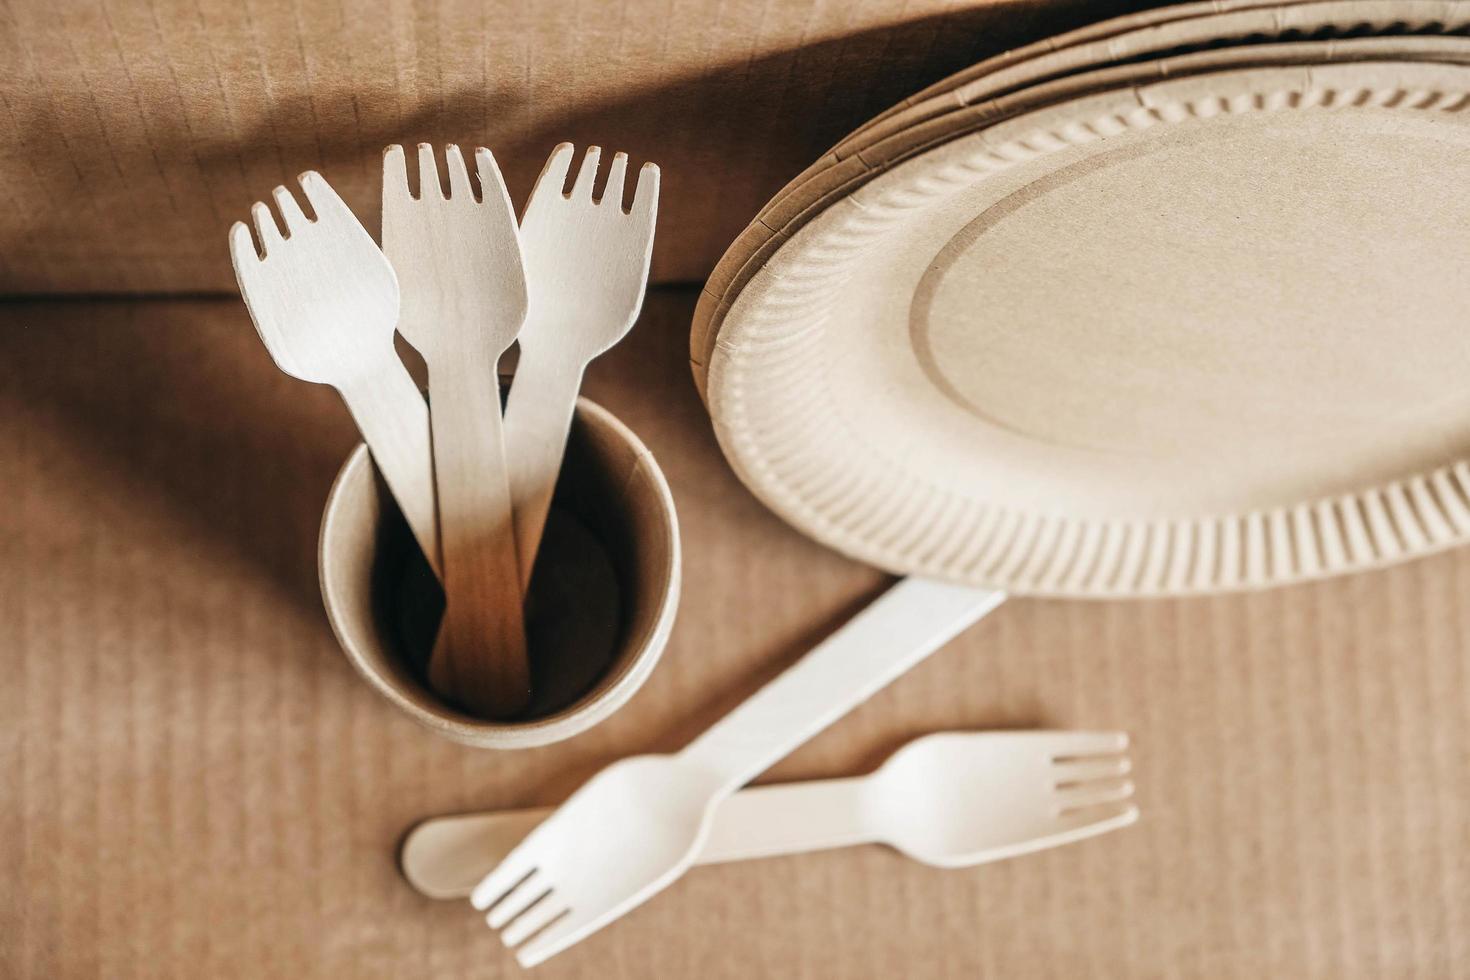 tenedores de madera y vasos de papel con platos sobre fondo de papel kraft. vajilla desechable ecológica foto